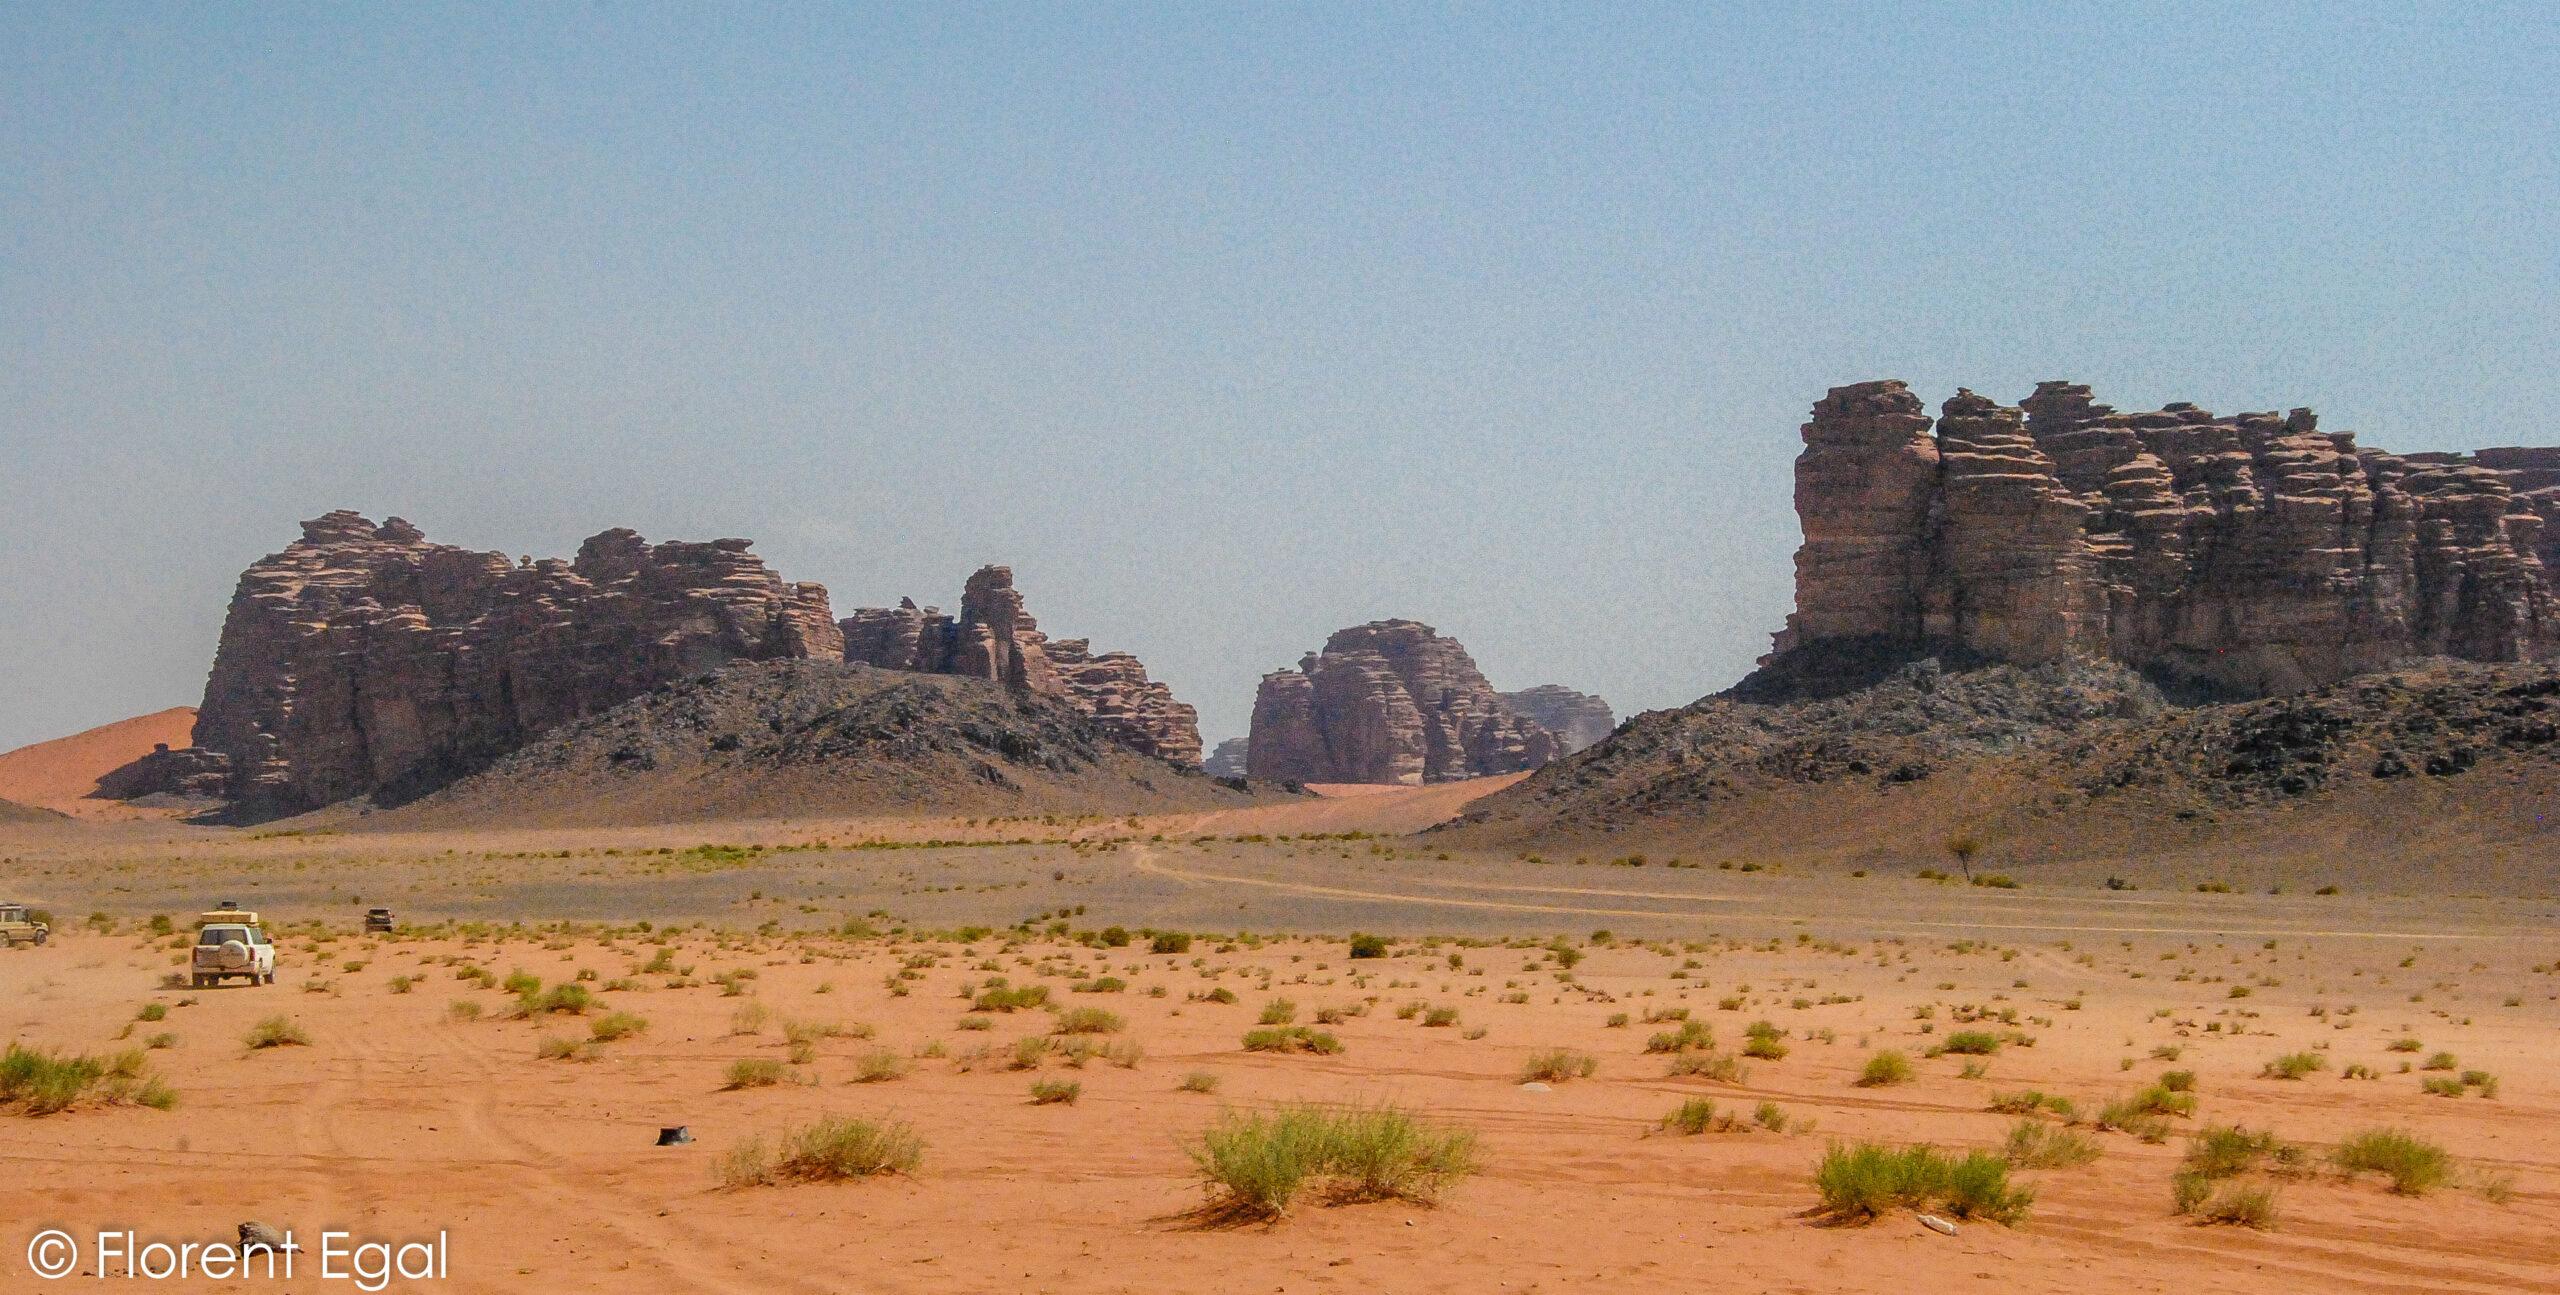 Ả Rập Xê Út: Xem gì và mong đợi gì ở vùng đất của sa mạc và đá?